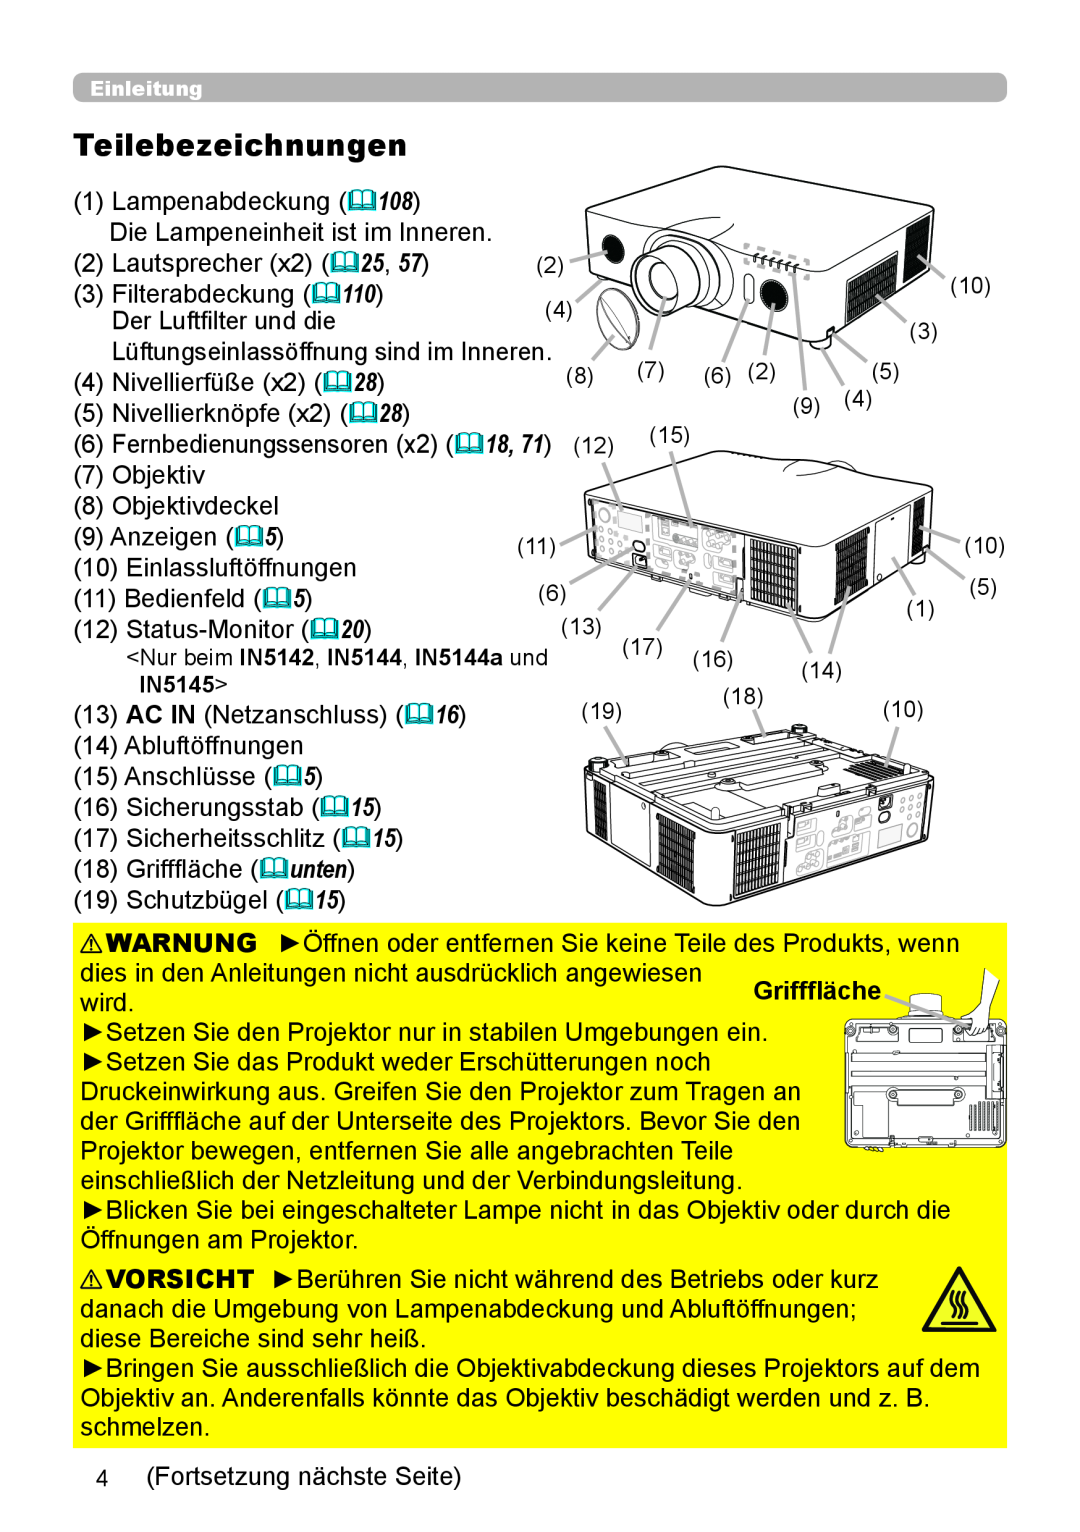 InFocus IN5132 user manual Teilebezeichnungen 